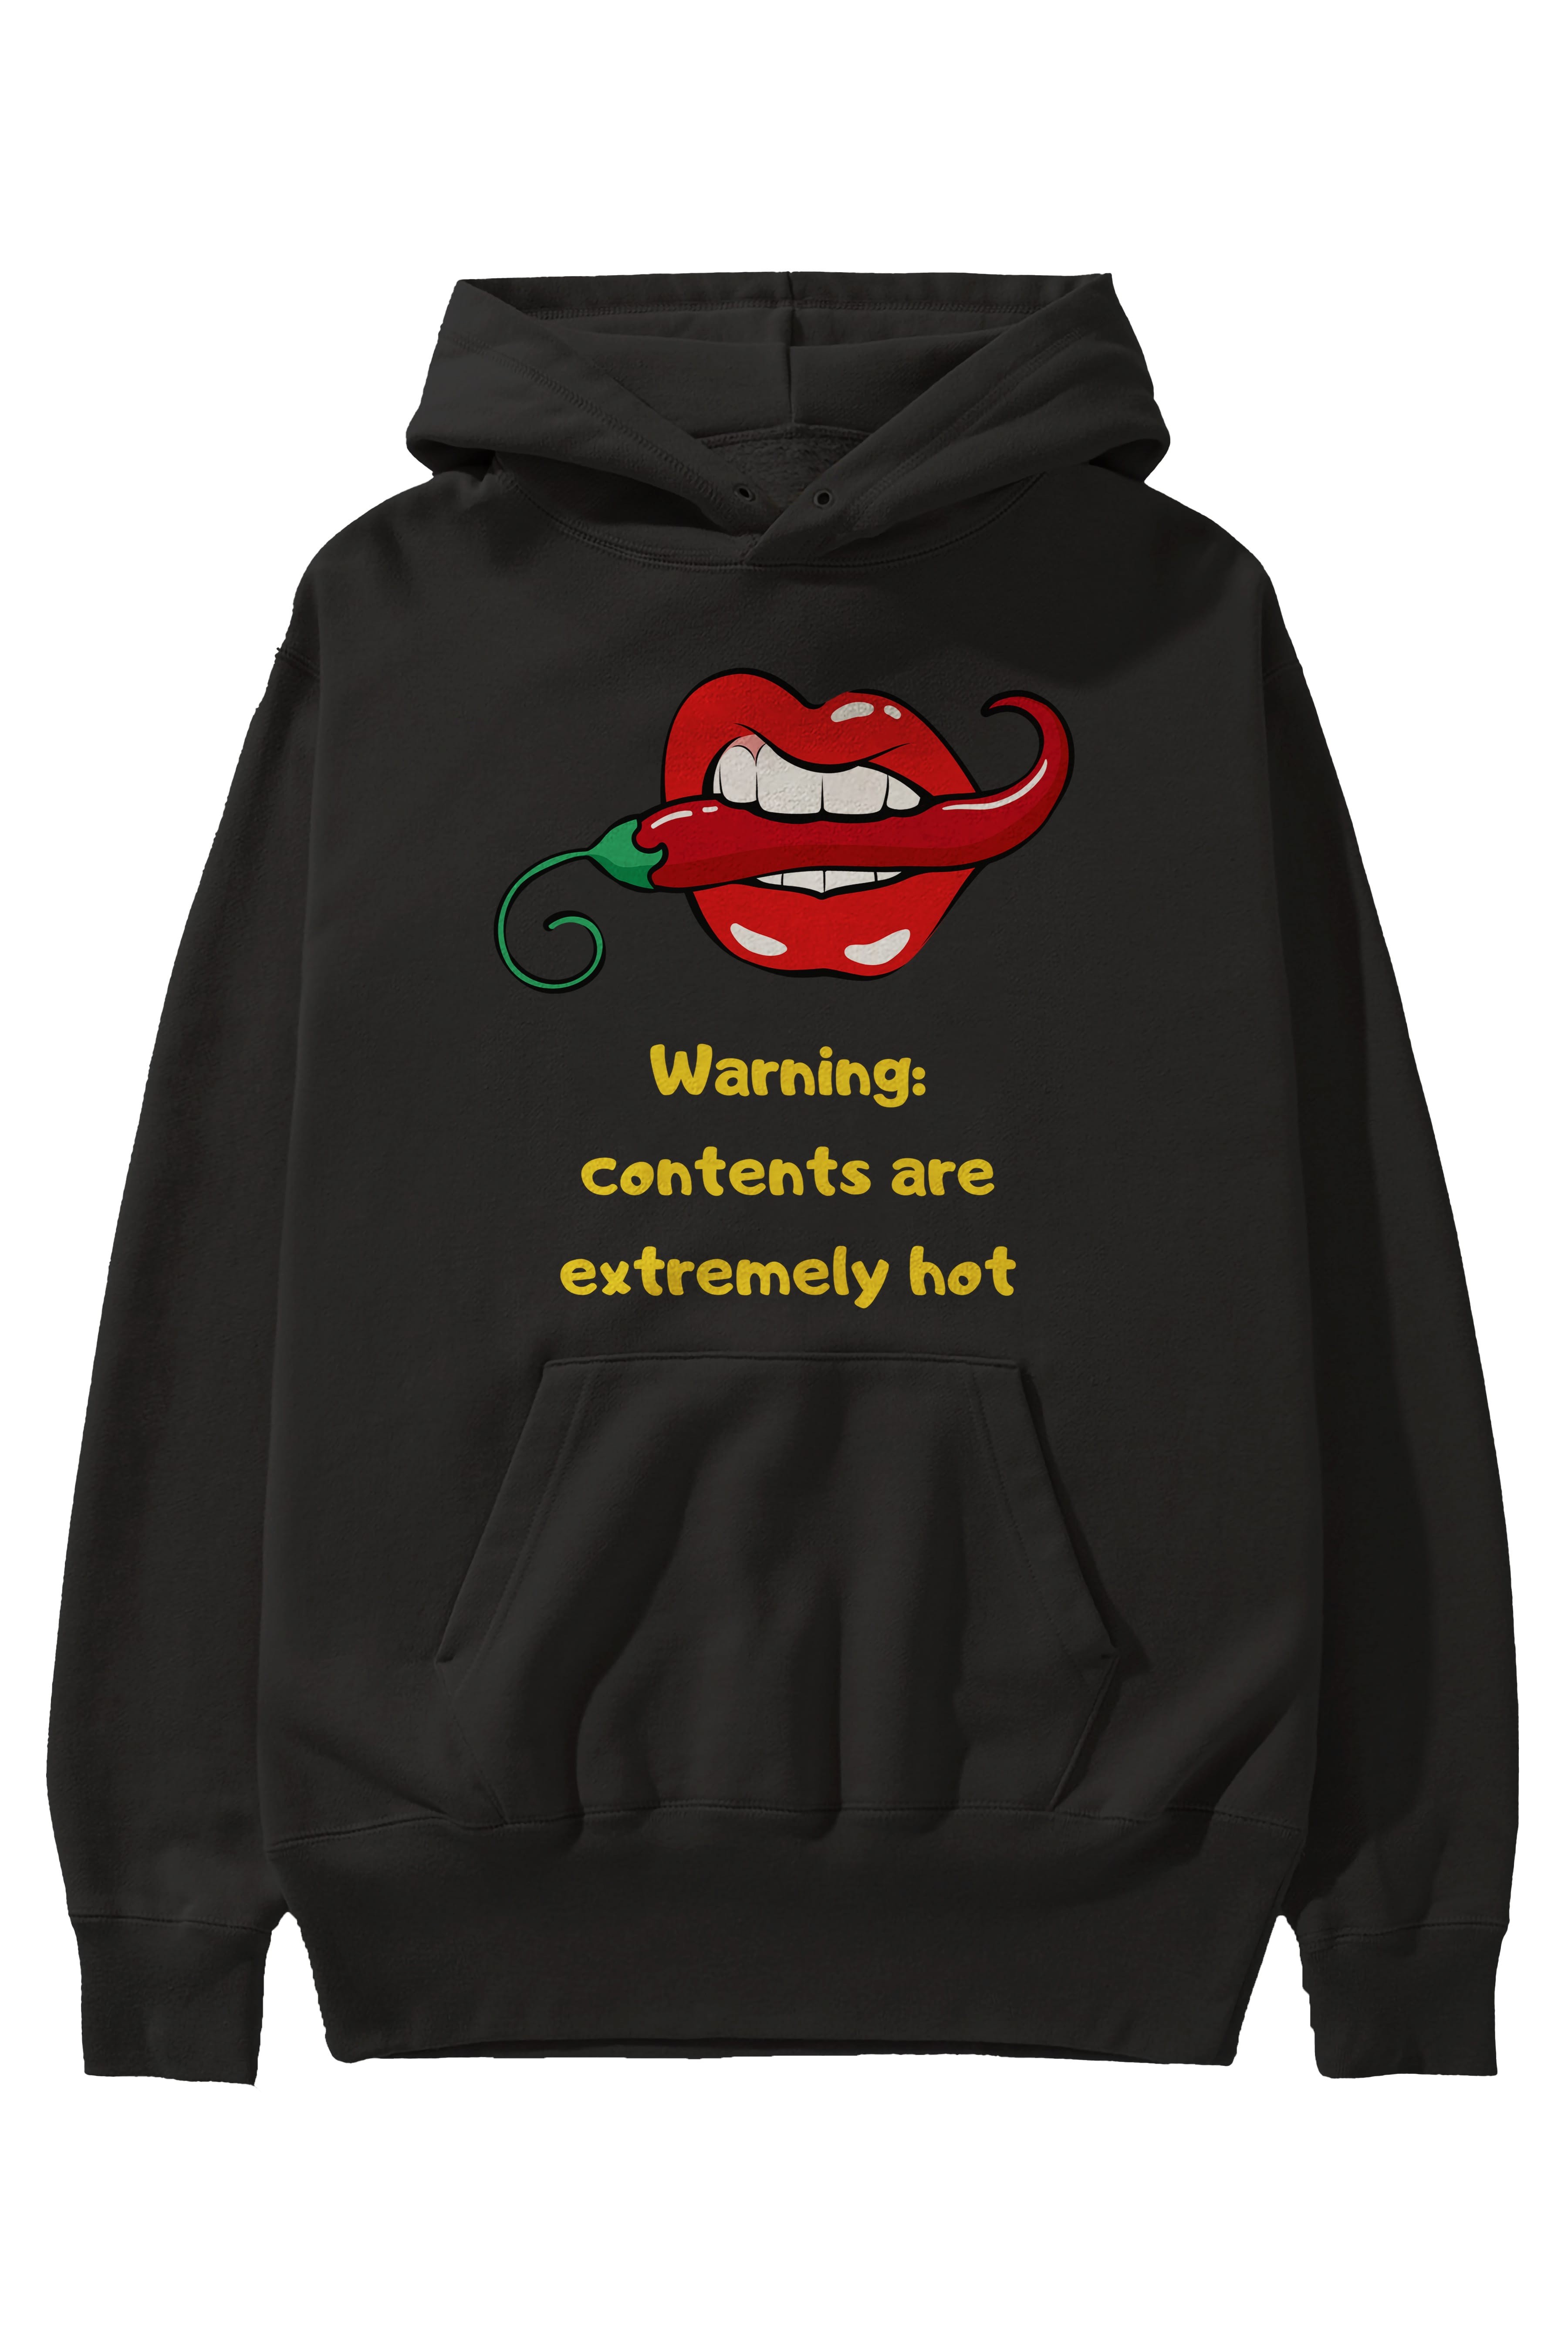 Warning Contents Yazılı Ön Baskılı Oversize Hoodie Kapüşonlu Sweatshirt Erkek Kadın Unisex